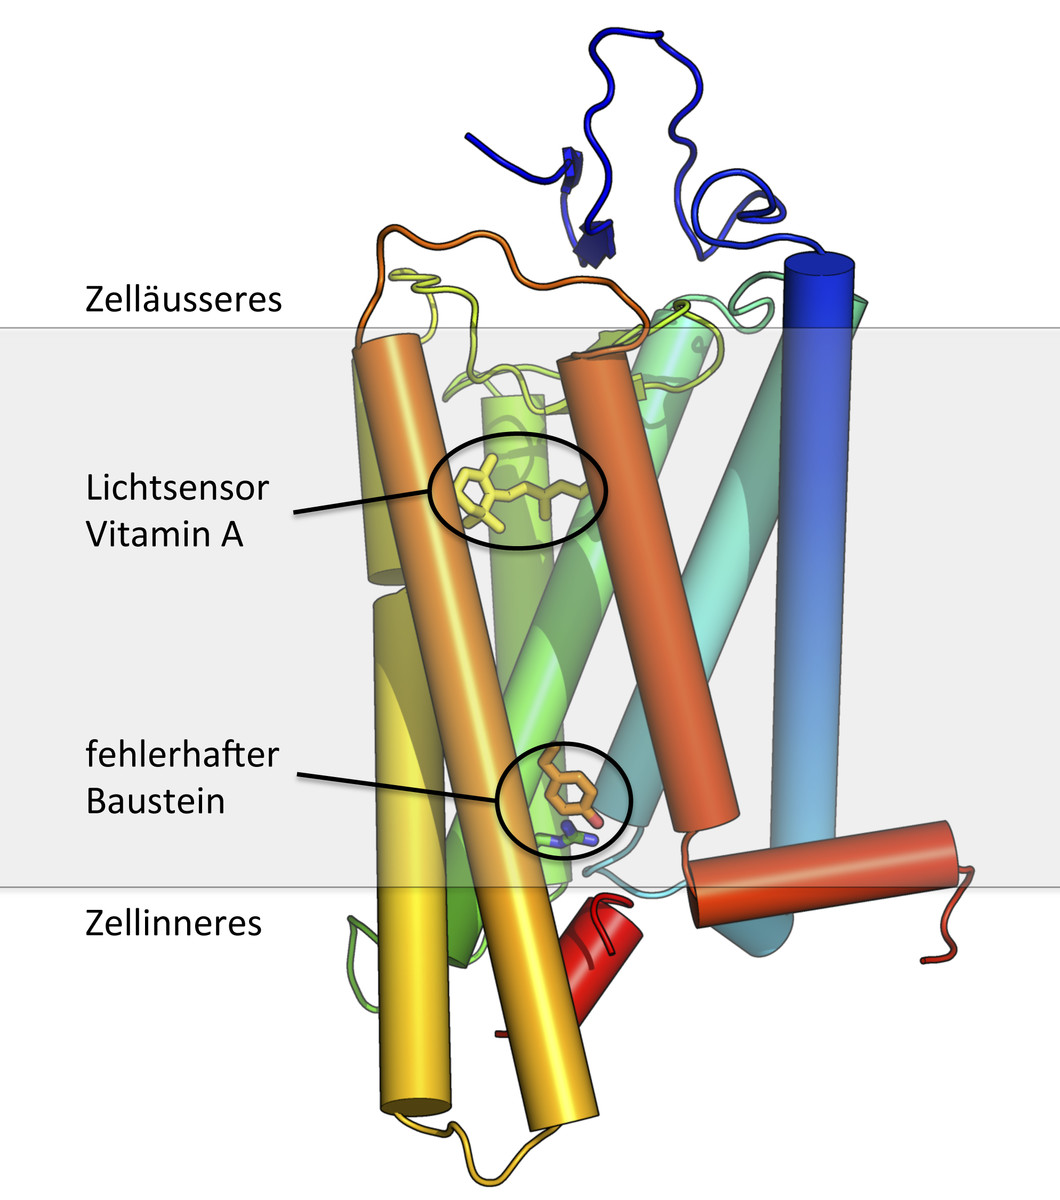 Struktur eines Lichtrezeptors – blockiert im aktiven Zustand. Das Vitamin-A-Molekül funktioniert als Sensor für das ankommende Licht. Unten ist der Baustein markiert, der für die Blockade des Rezeptors verantwortlich ist. In hellgrau ist die Zellmembran angedeutet.